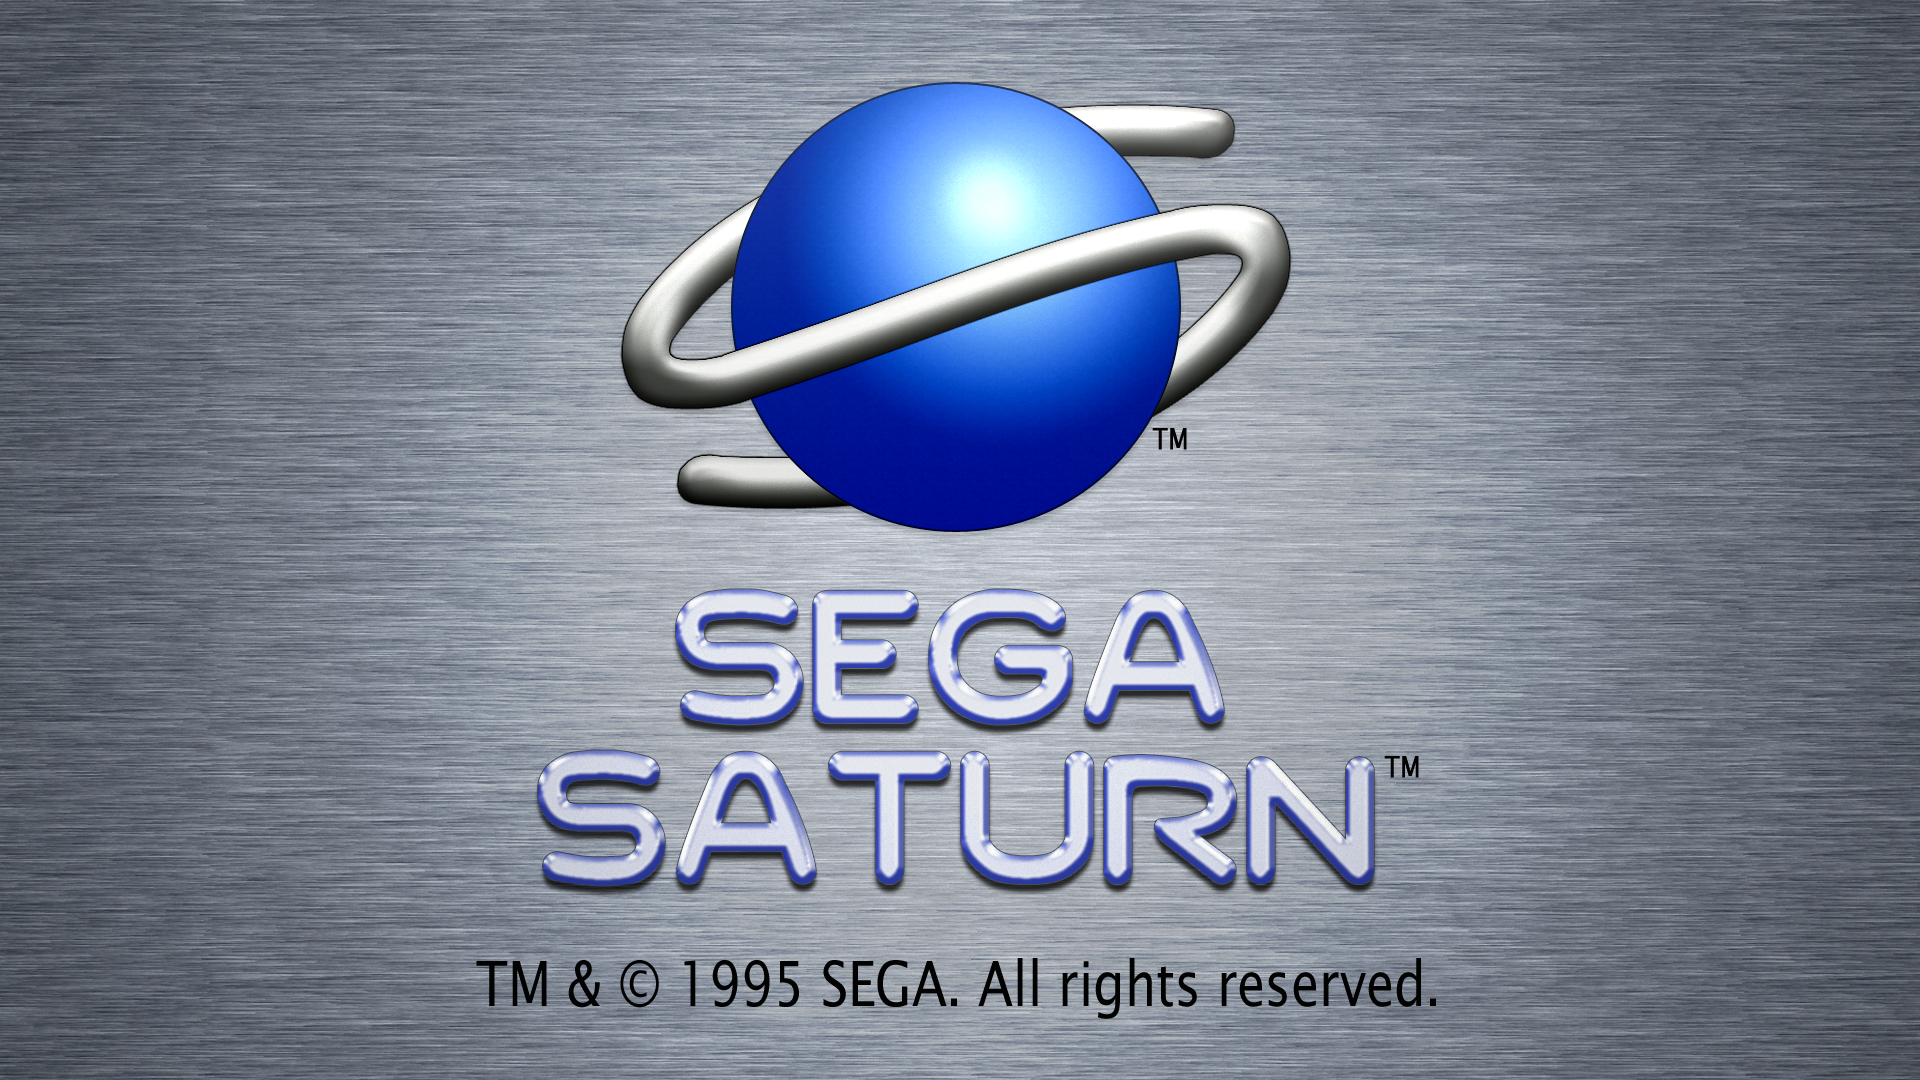 Sega Saturn Logo Imgkid The Image Kid Has It